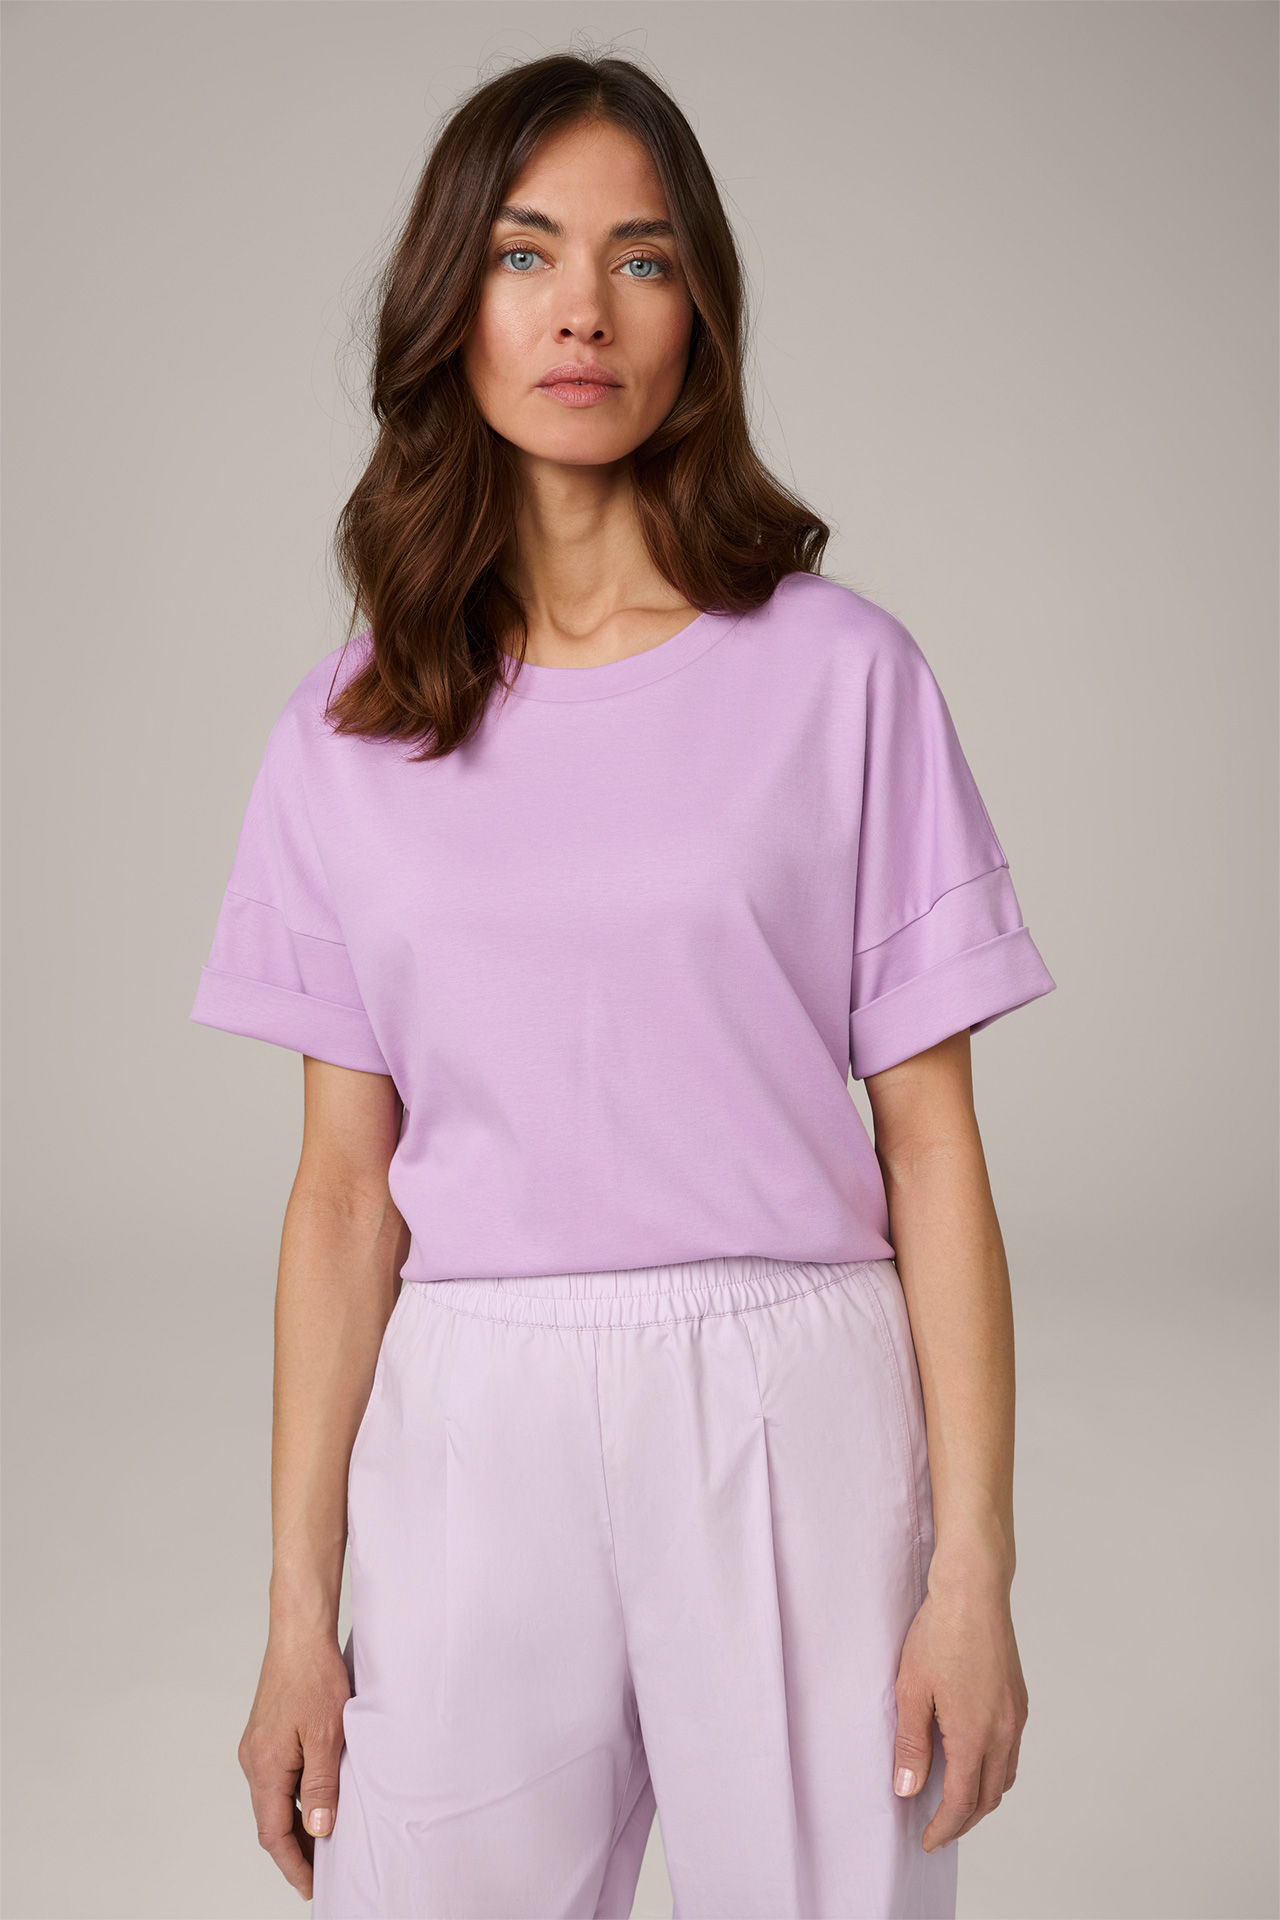 T-shirt en coton interlock à manches courtes, en lilas